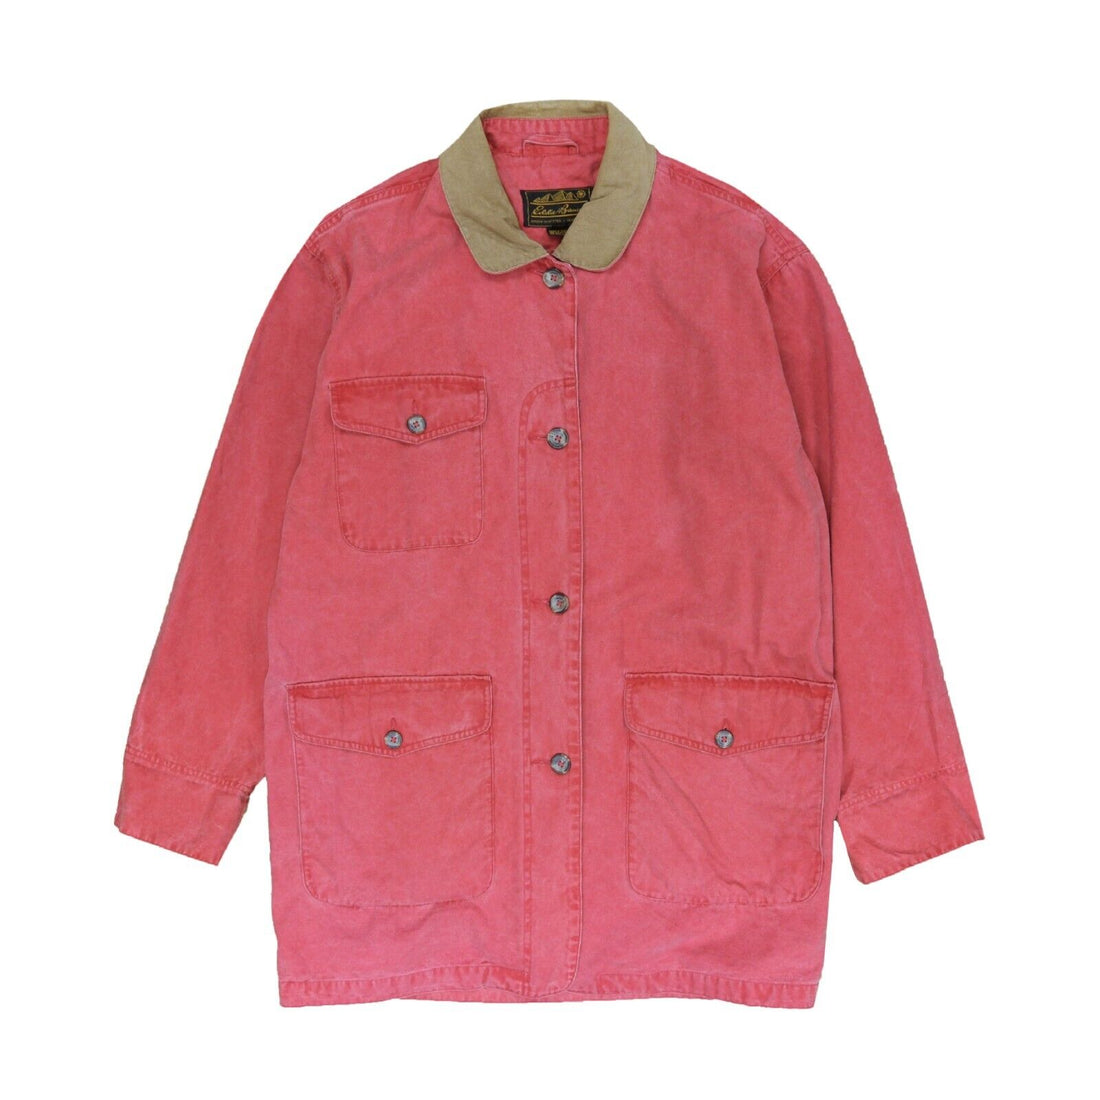 Vintage Eddie Bauer Barn Work Coat Jacket Size Medium Red Corduroy Trim 90s